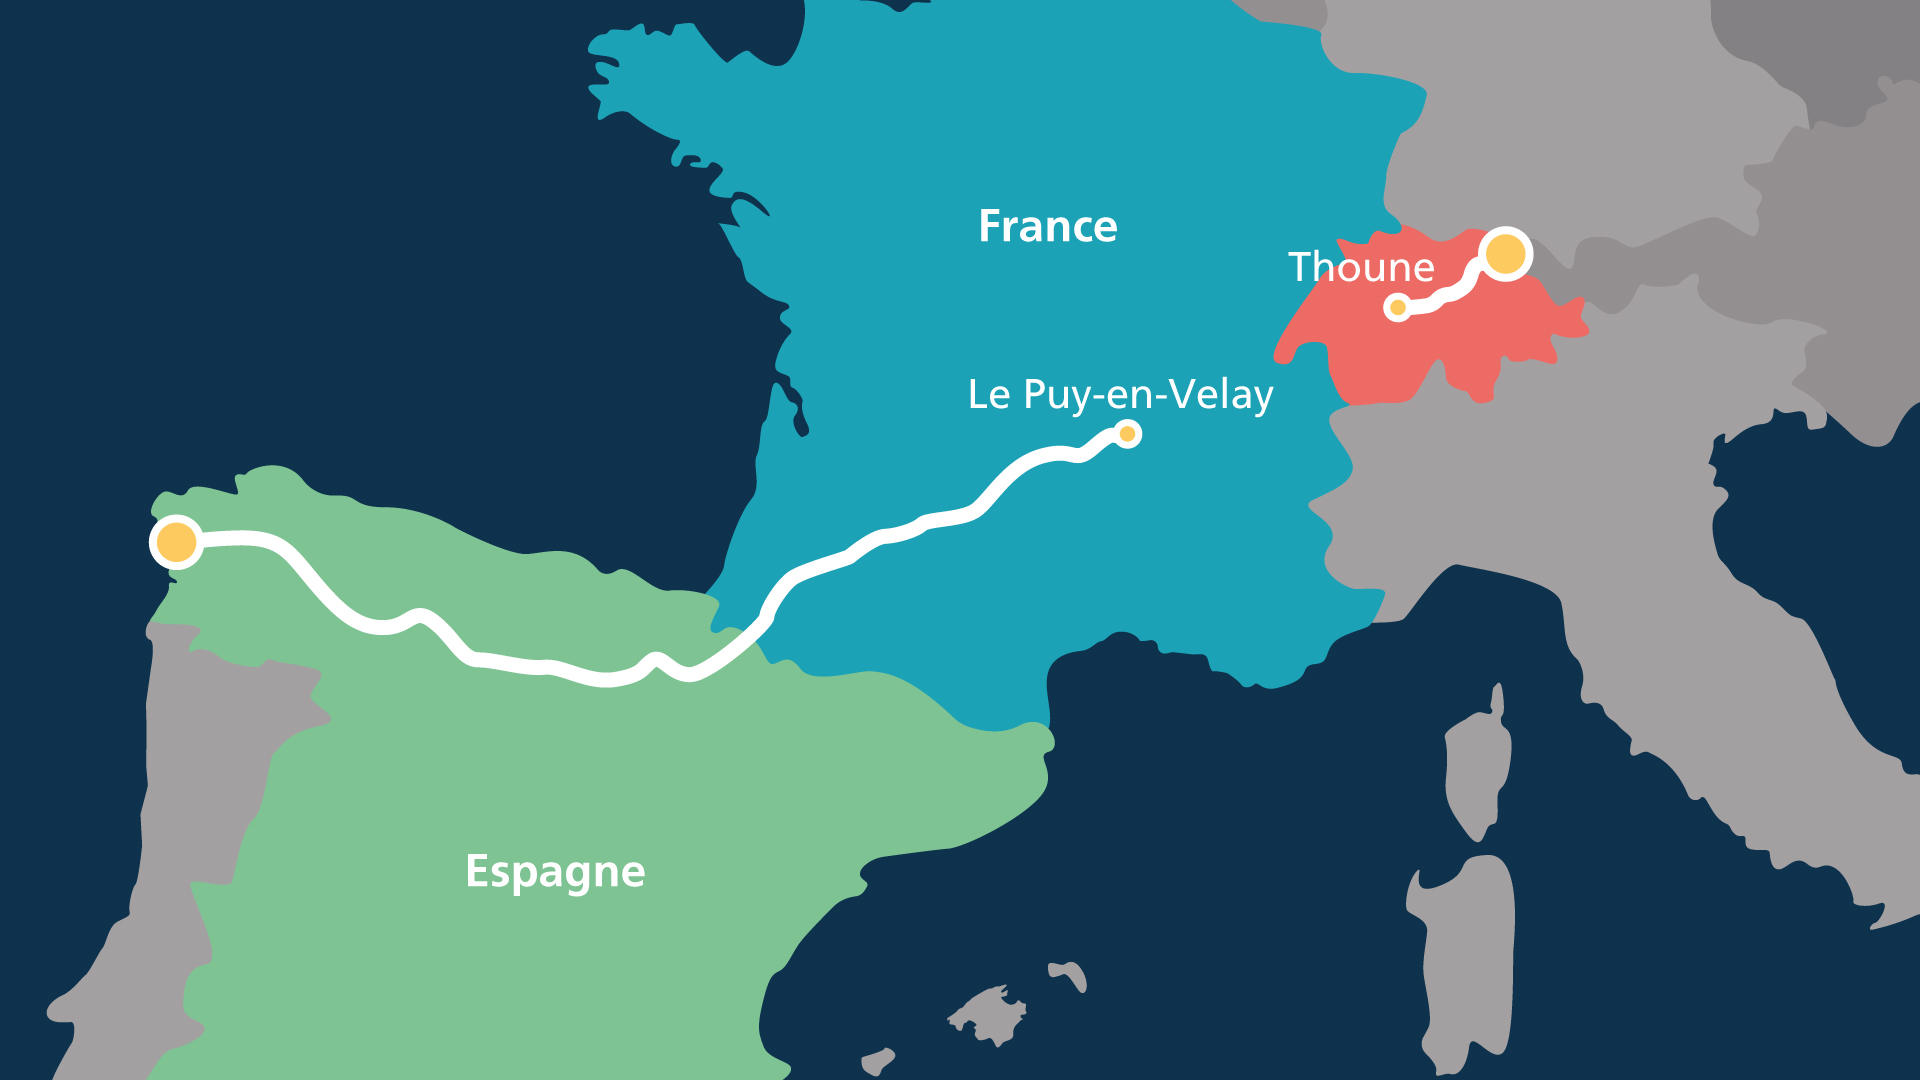 Carte d’Europe avec un itinéraire allant de Suisse en Espagne en passant par la France.